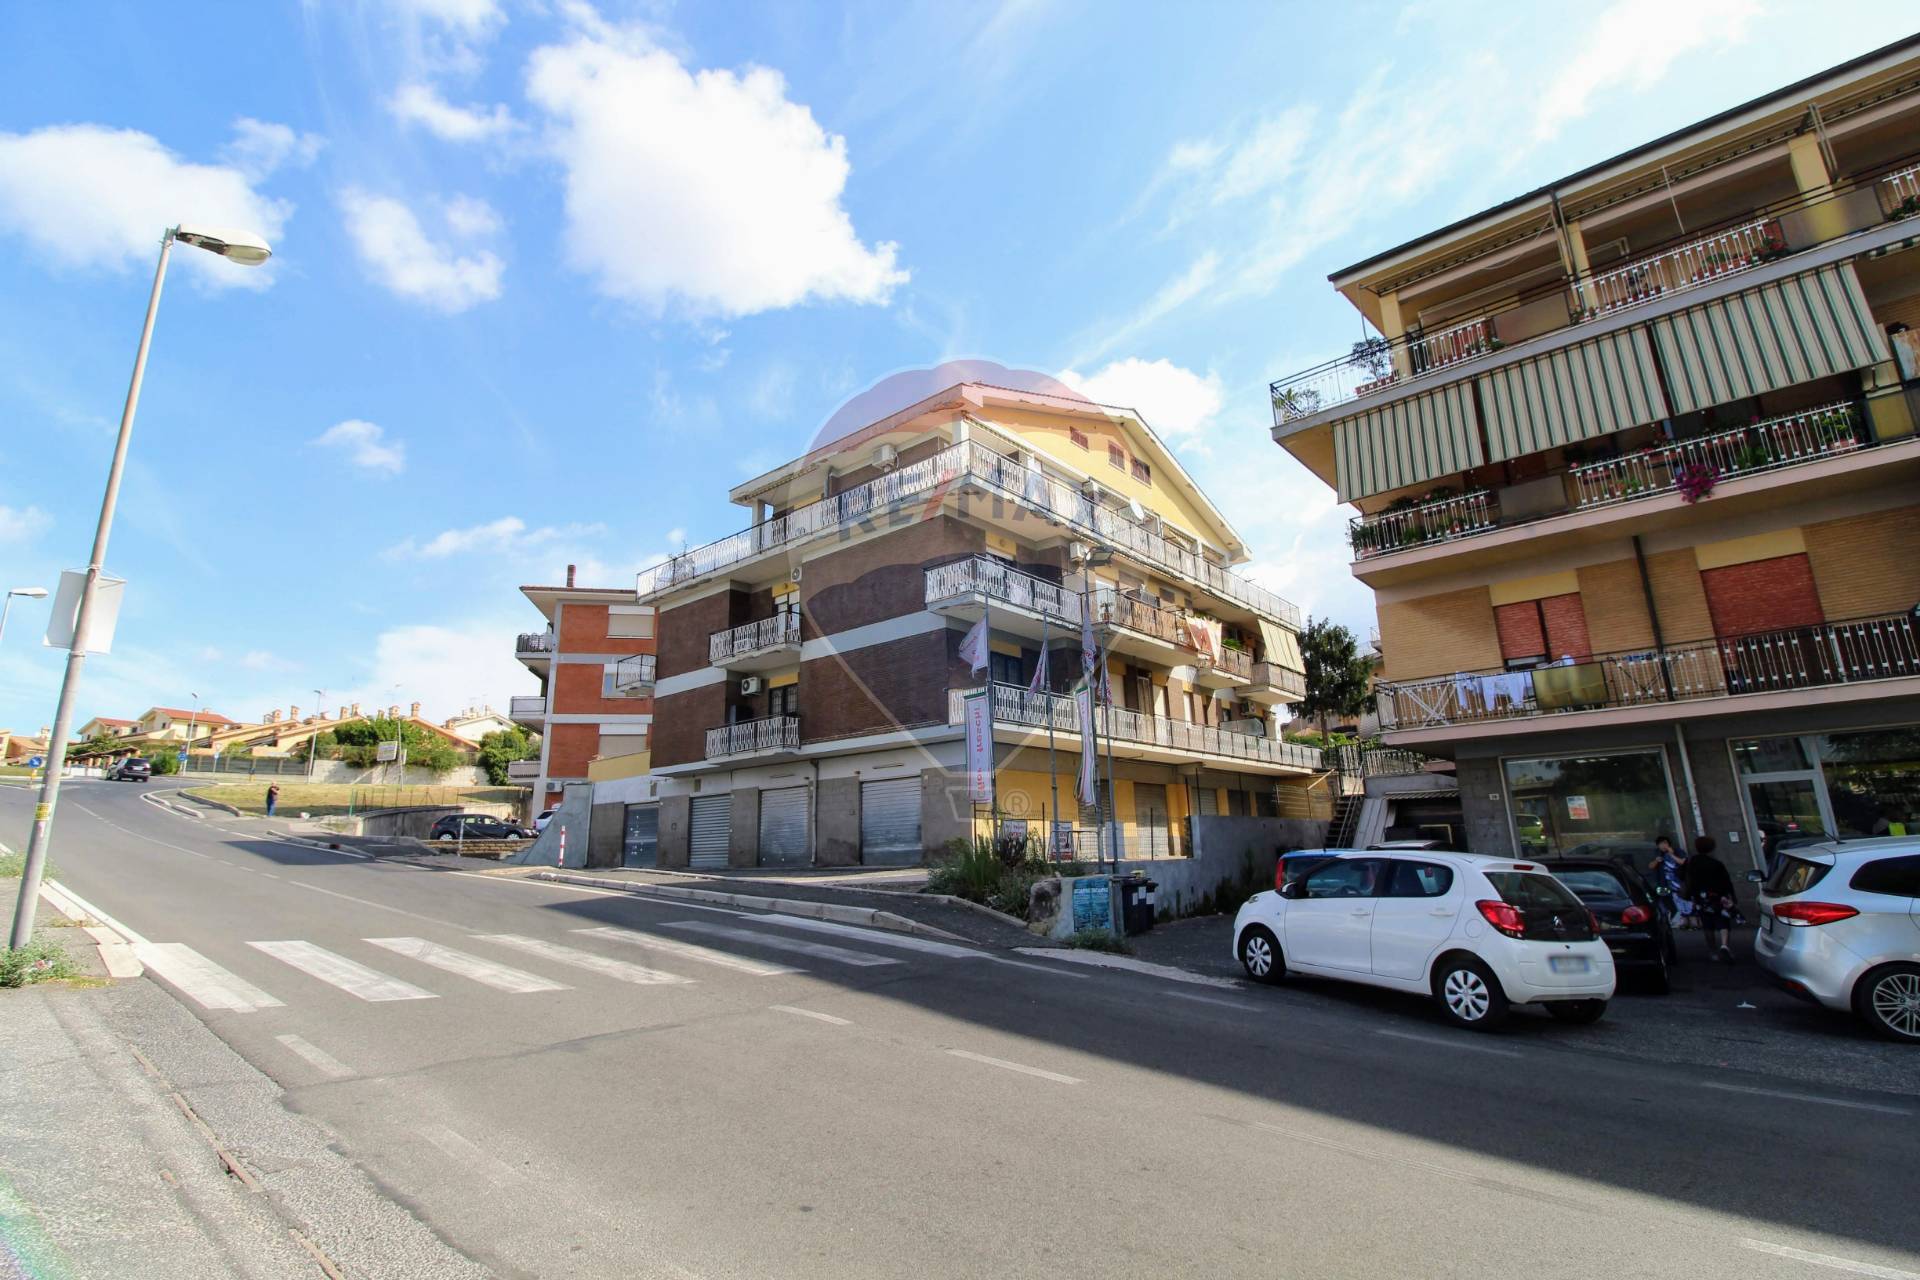 Negozio / Locale in vendita a Albano Laziale, 9999 locali, zona Zona: Cecchina, prezzo € 160.000 | CambioCasa.it